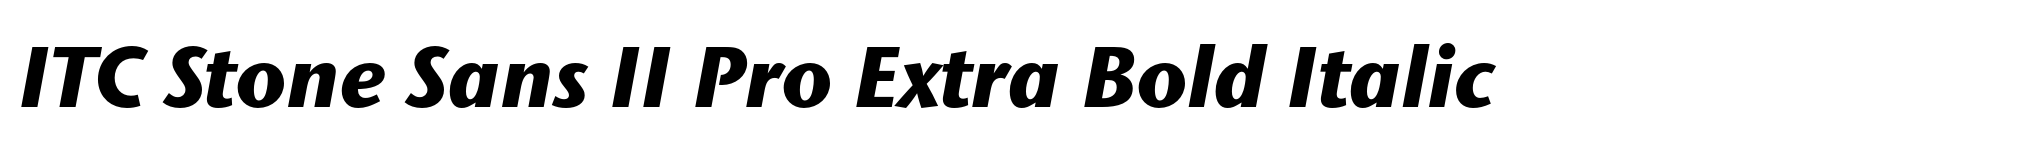 ITC Stone Sans II Pro Extra Bold Italic image